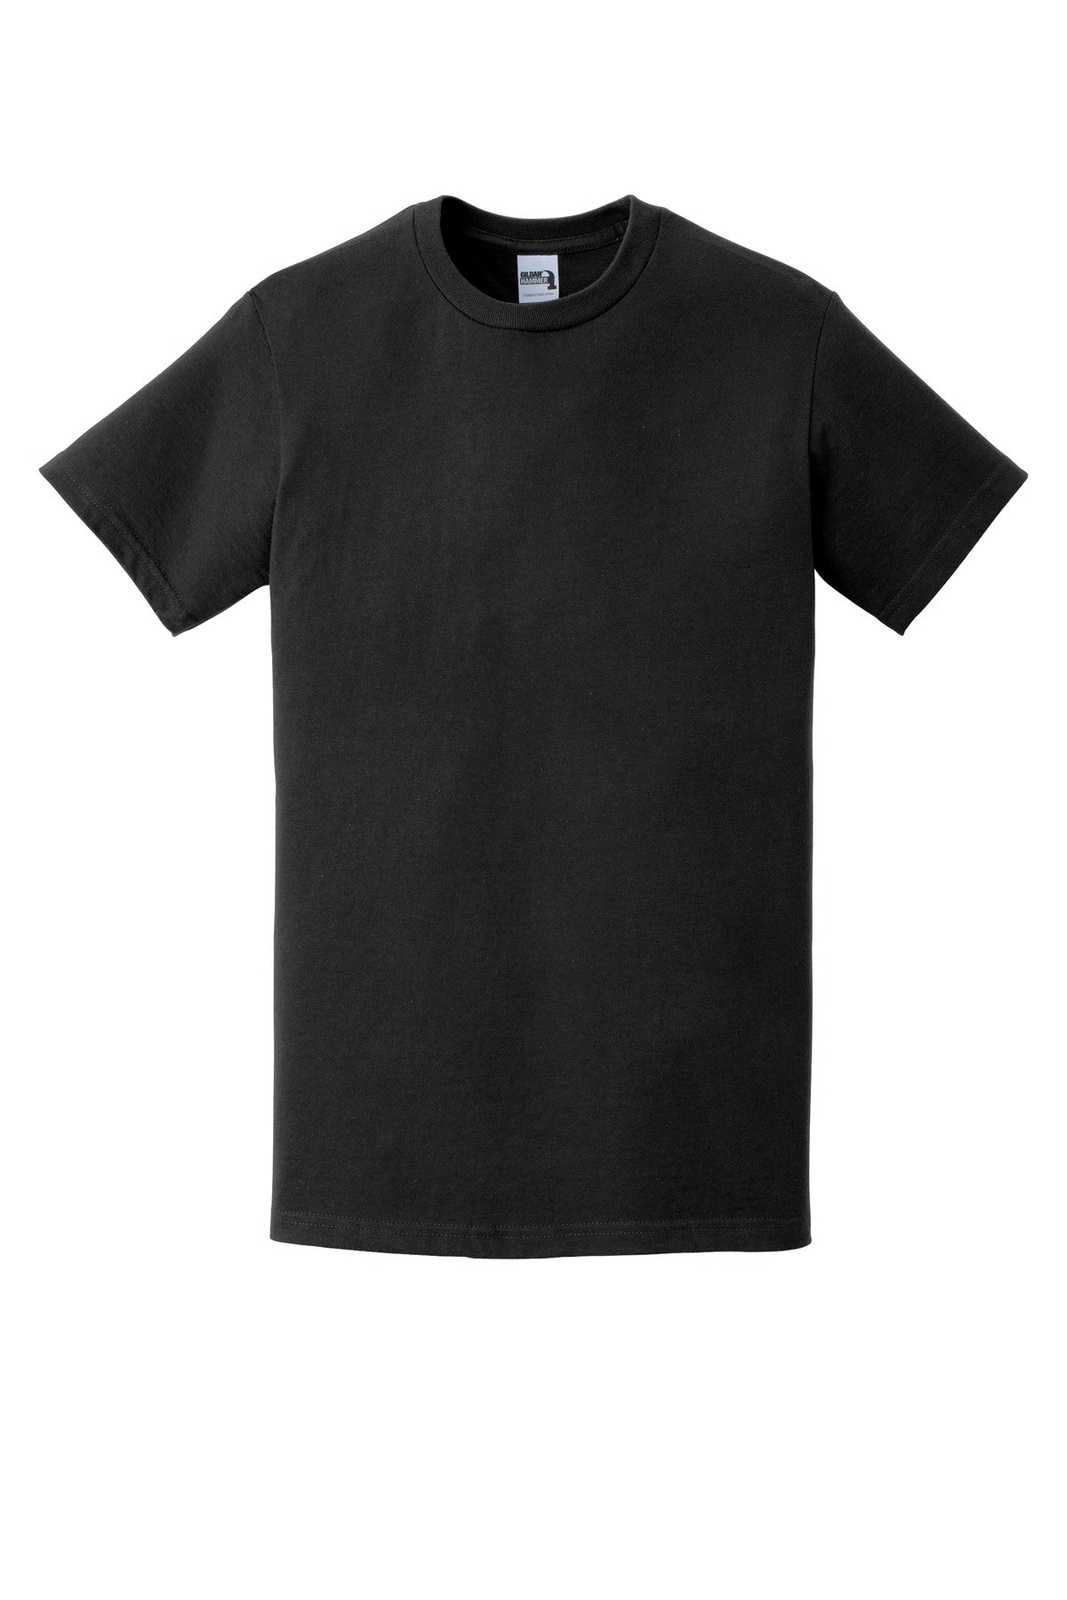 Gildan H000 Hammer T-Shirt - Black - HIT a Double